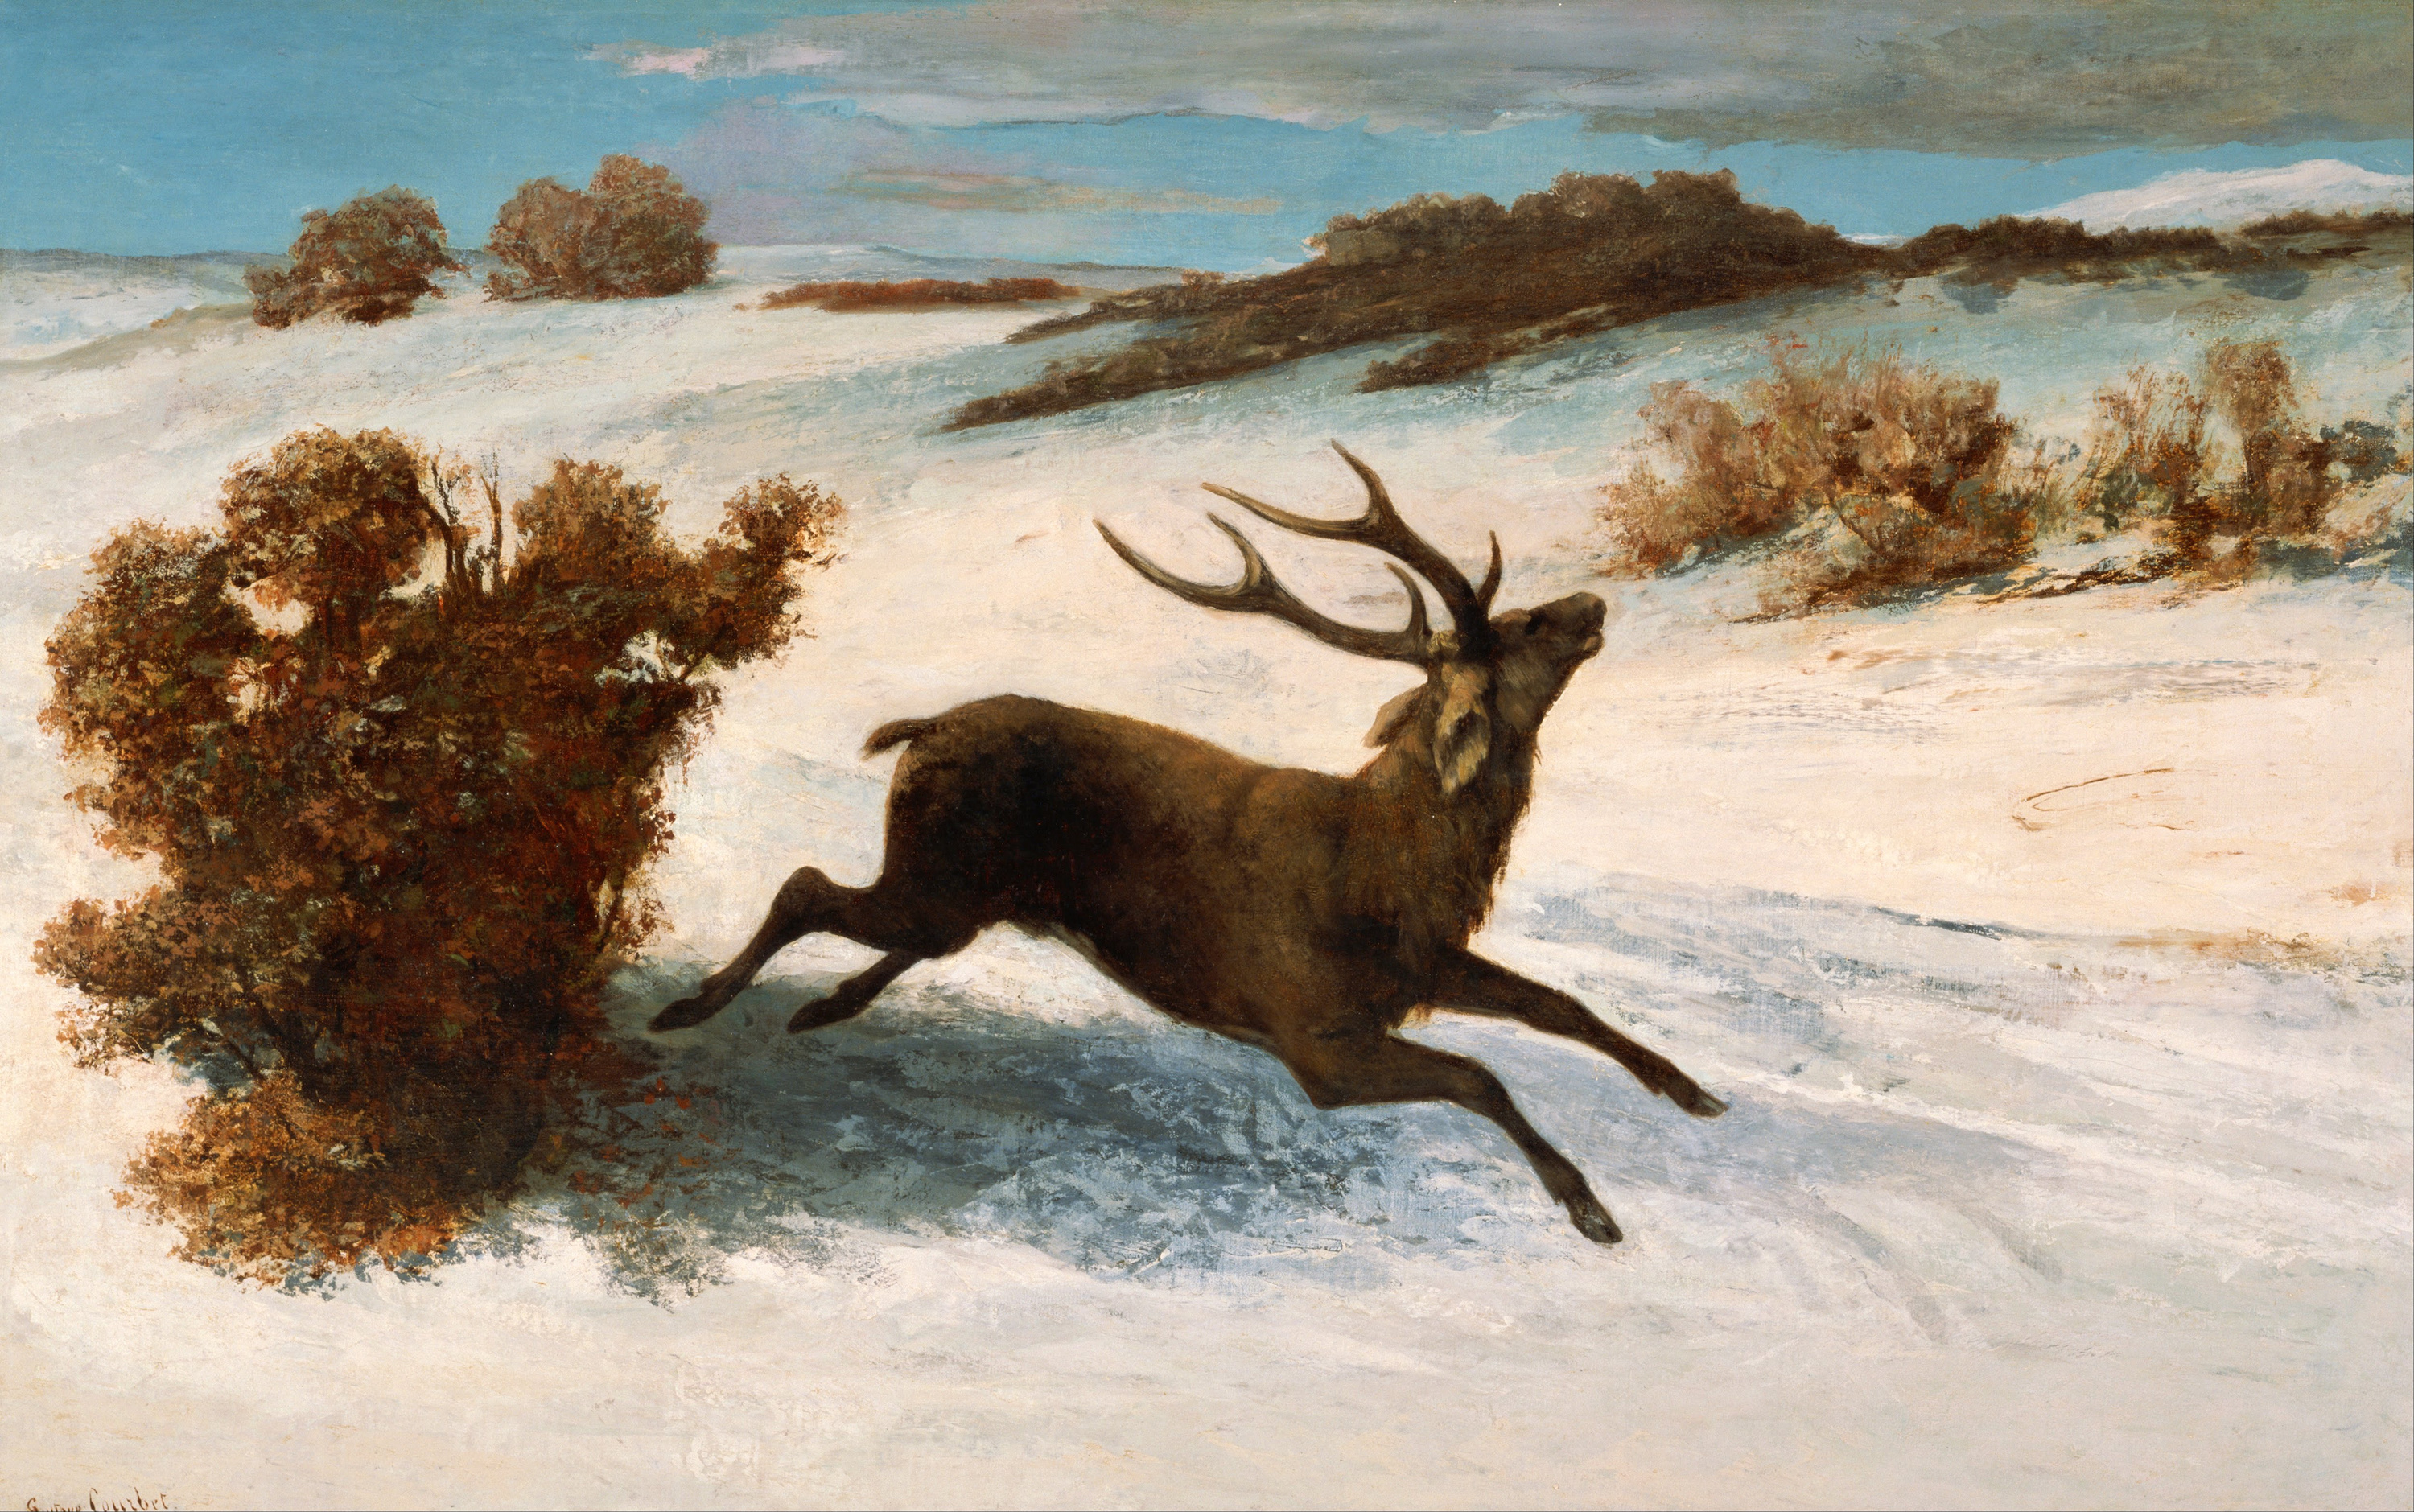 鹿在雪地里奔跑 by 古斯塔夫 库尔贝 - c.1856 - c.1857 - 148.8 x 93.5 厘米 Artizon美术馆